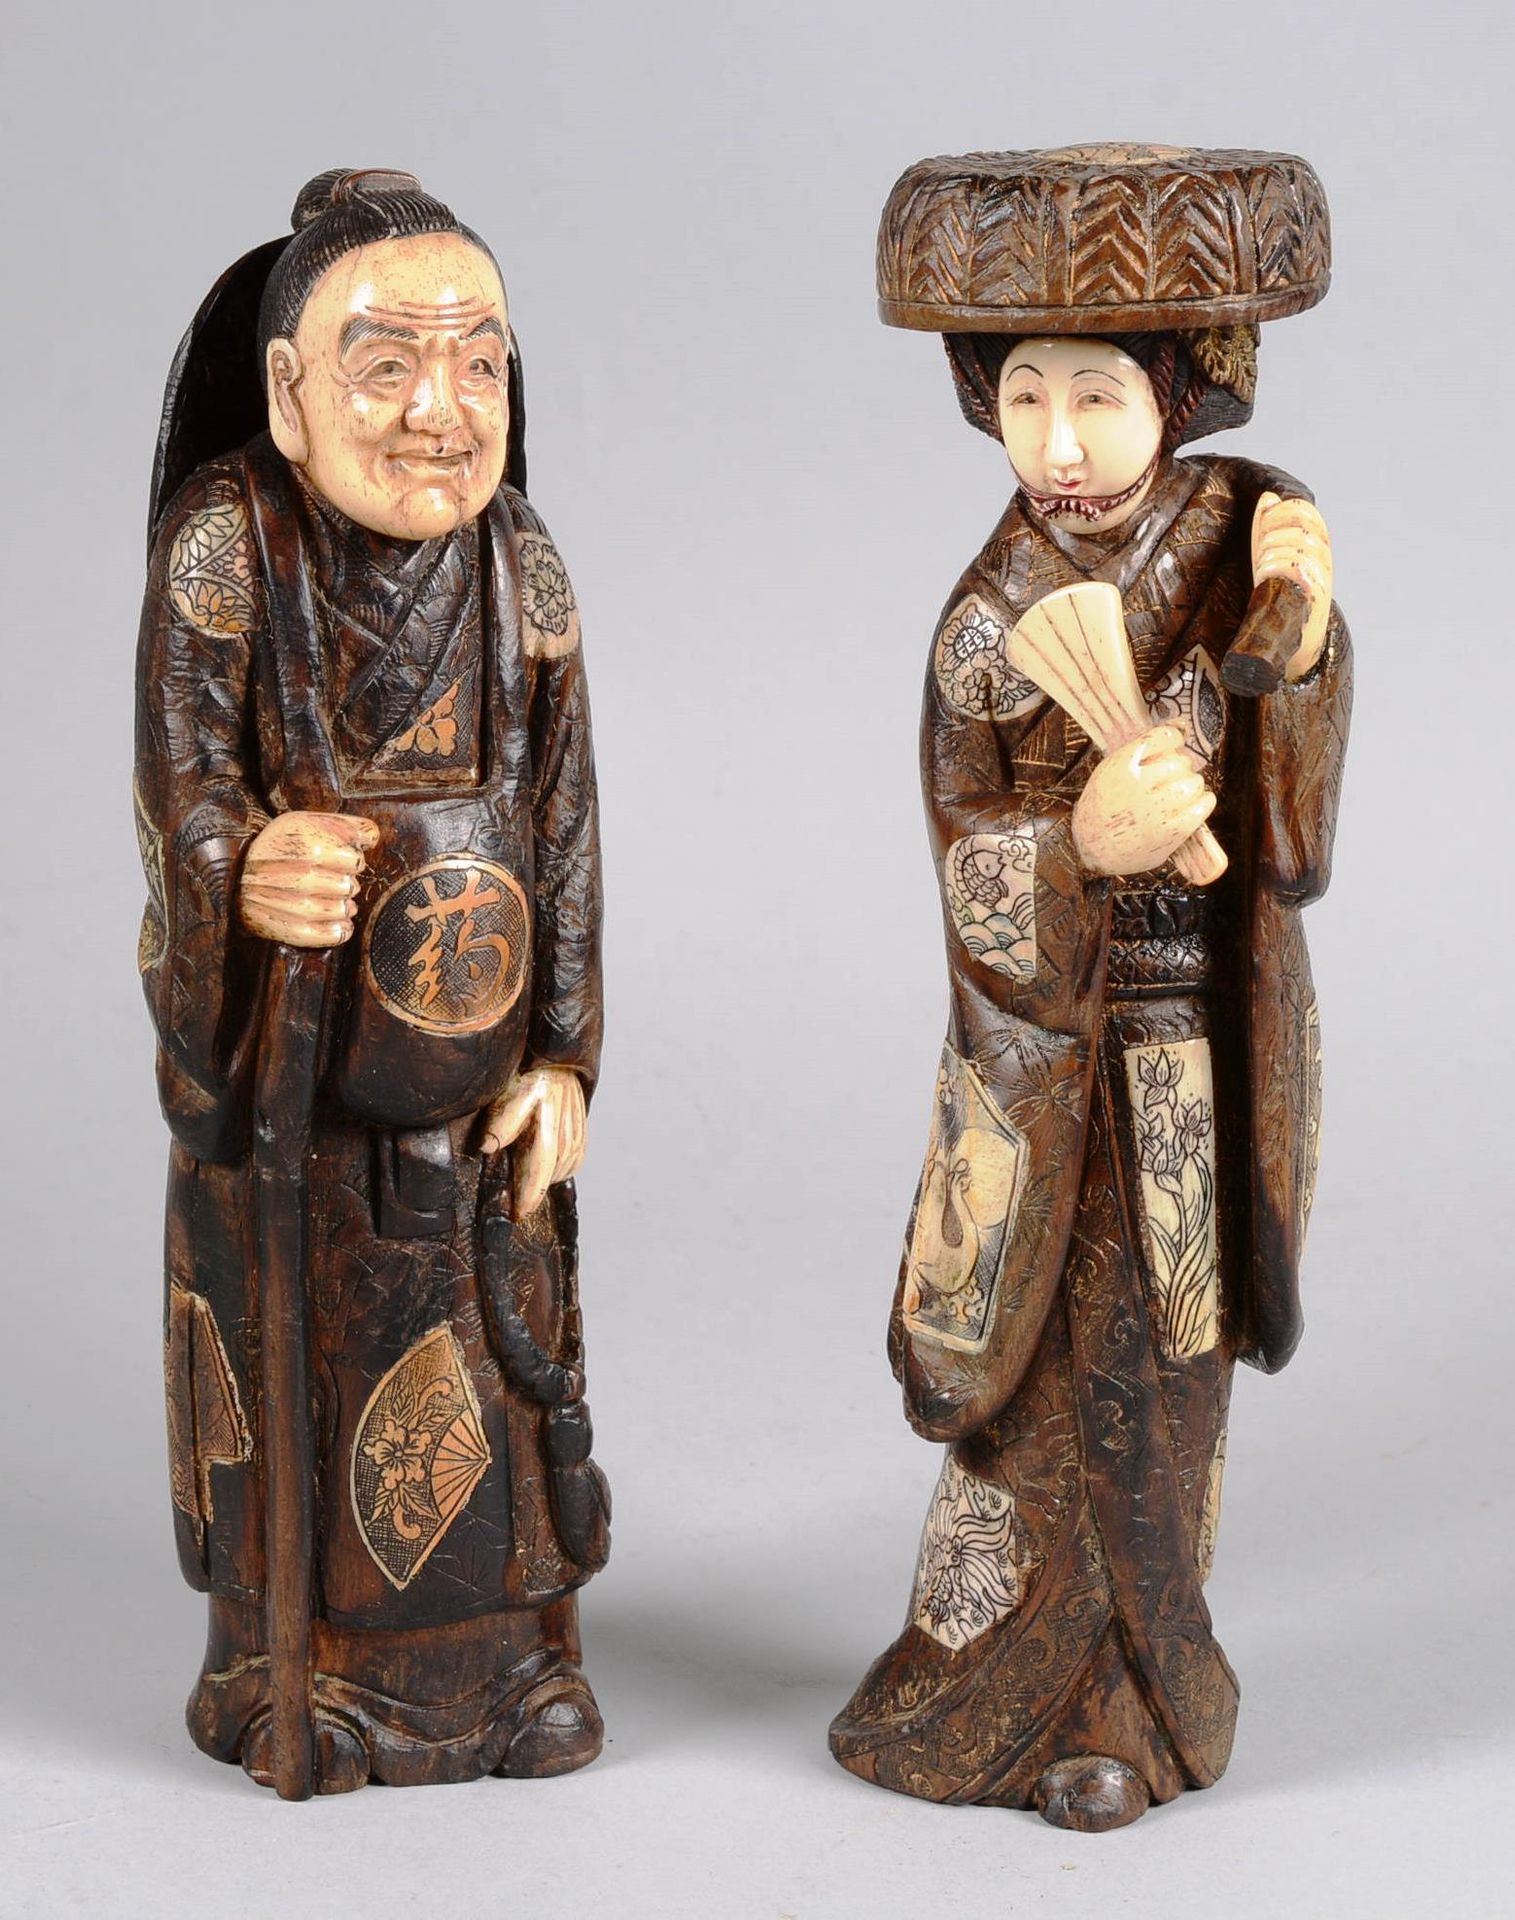 JAPON. GIAPPONE.

Due figure di legno intagliato chiamate criselefantine, i volt&hellip;